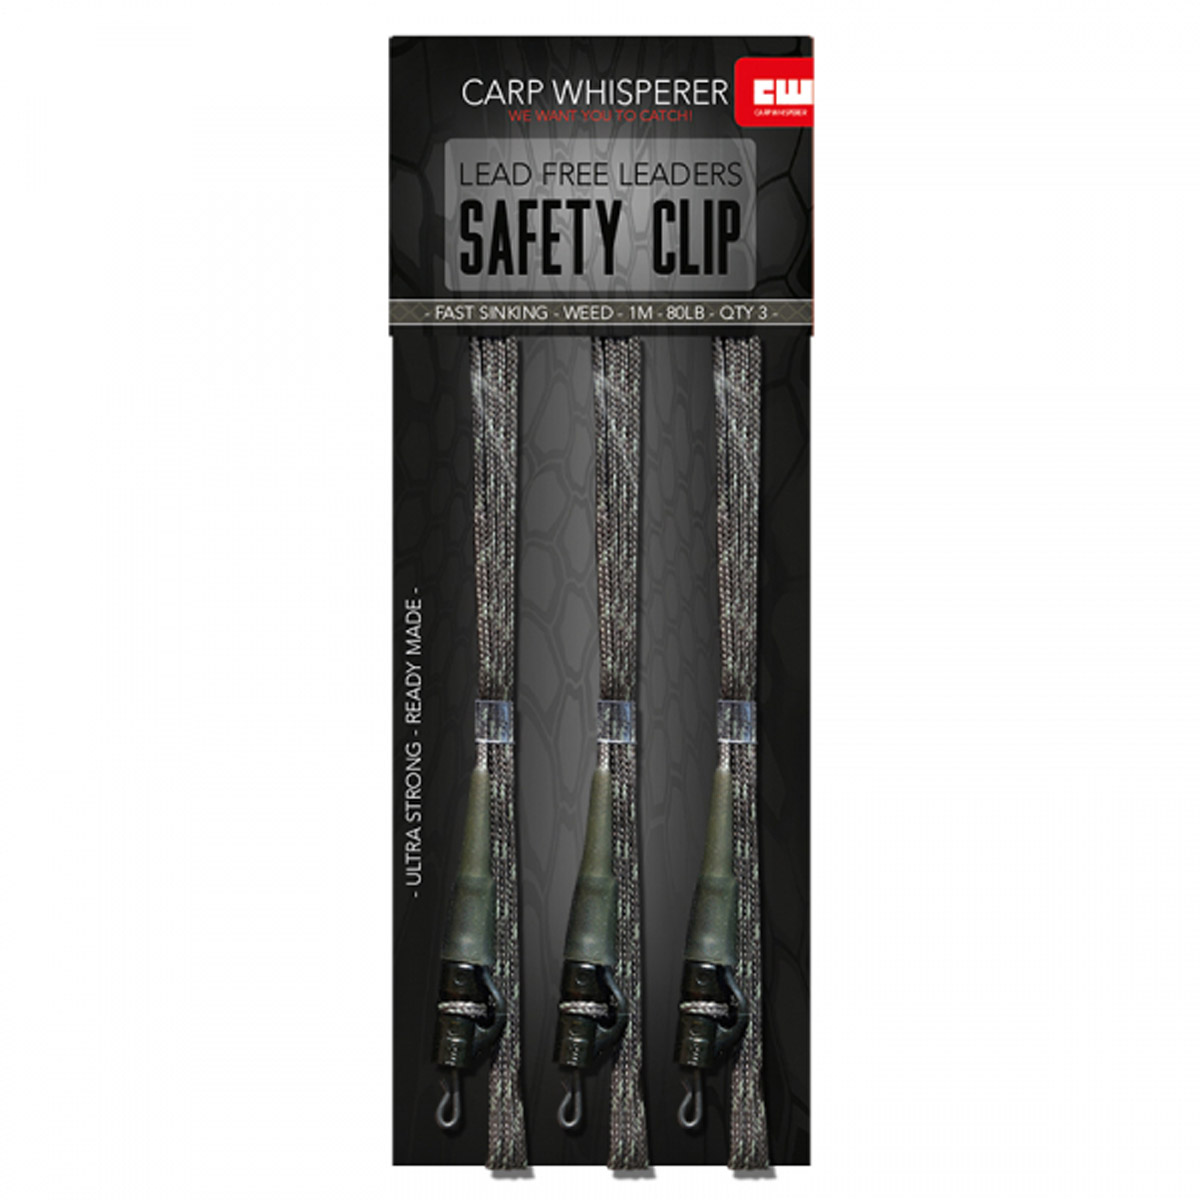 Carp Whisperer - Safety Clip Leaders - 1 mtr